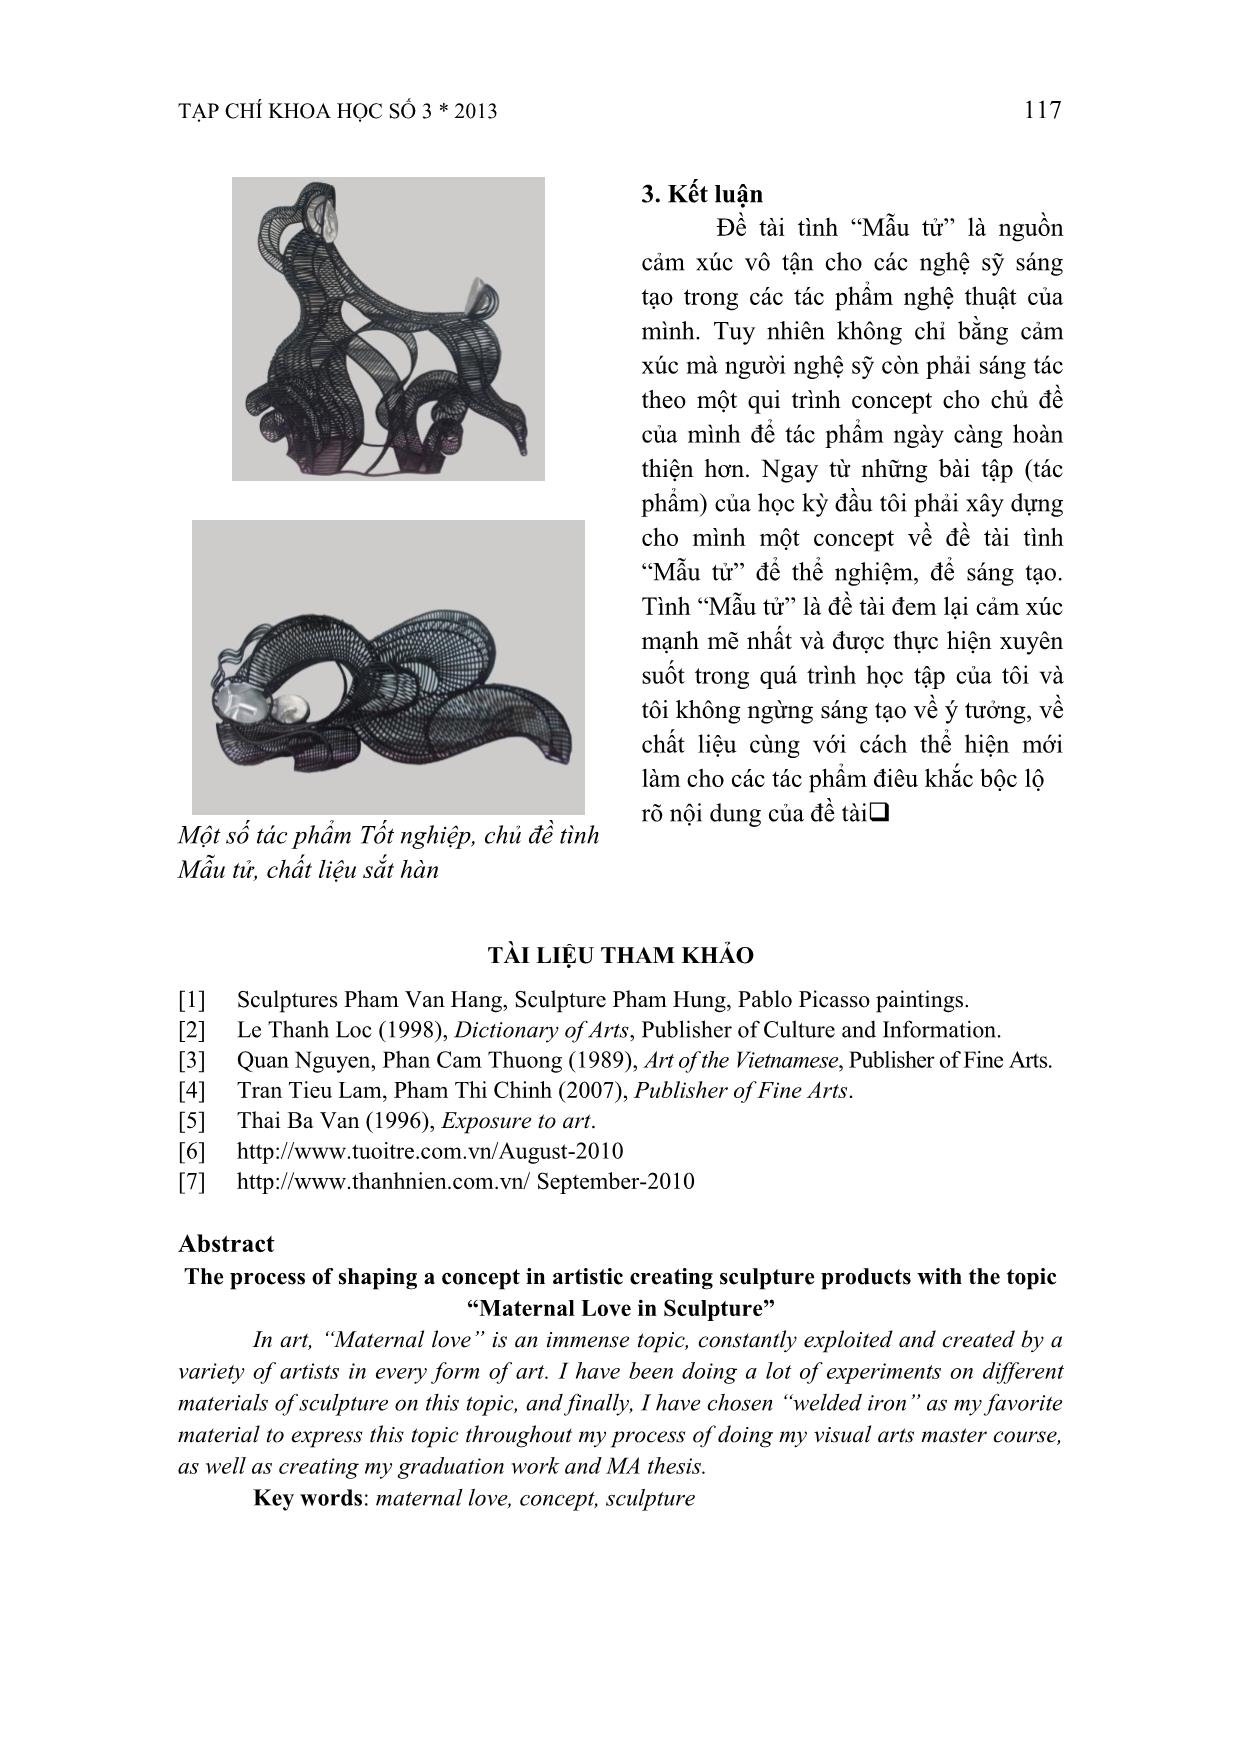 Qui trình hình thành concept trong sáng tạo nghệ thuật điêu khắc với chủ đề tình mẫu tử trang 7